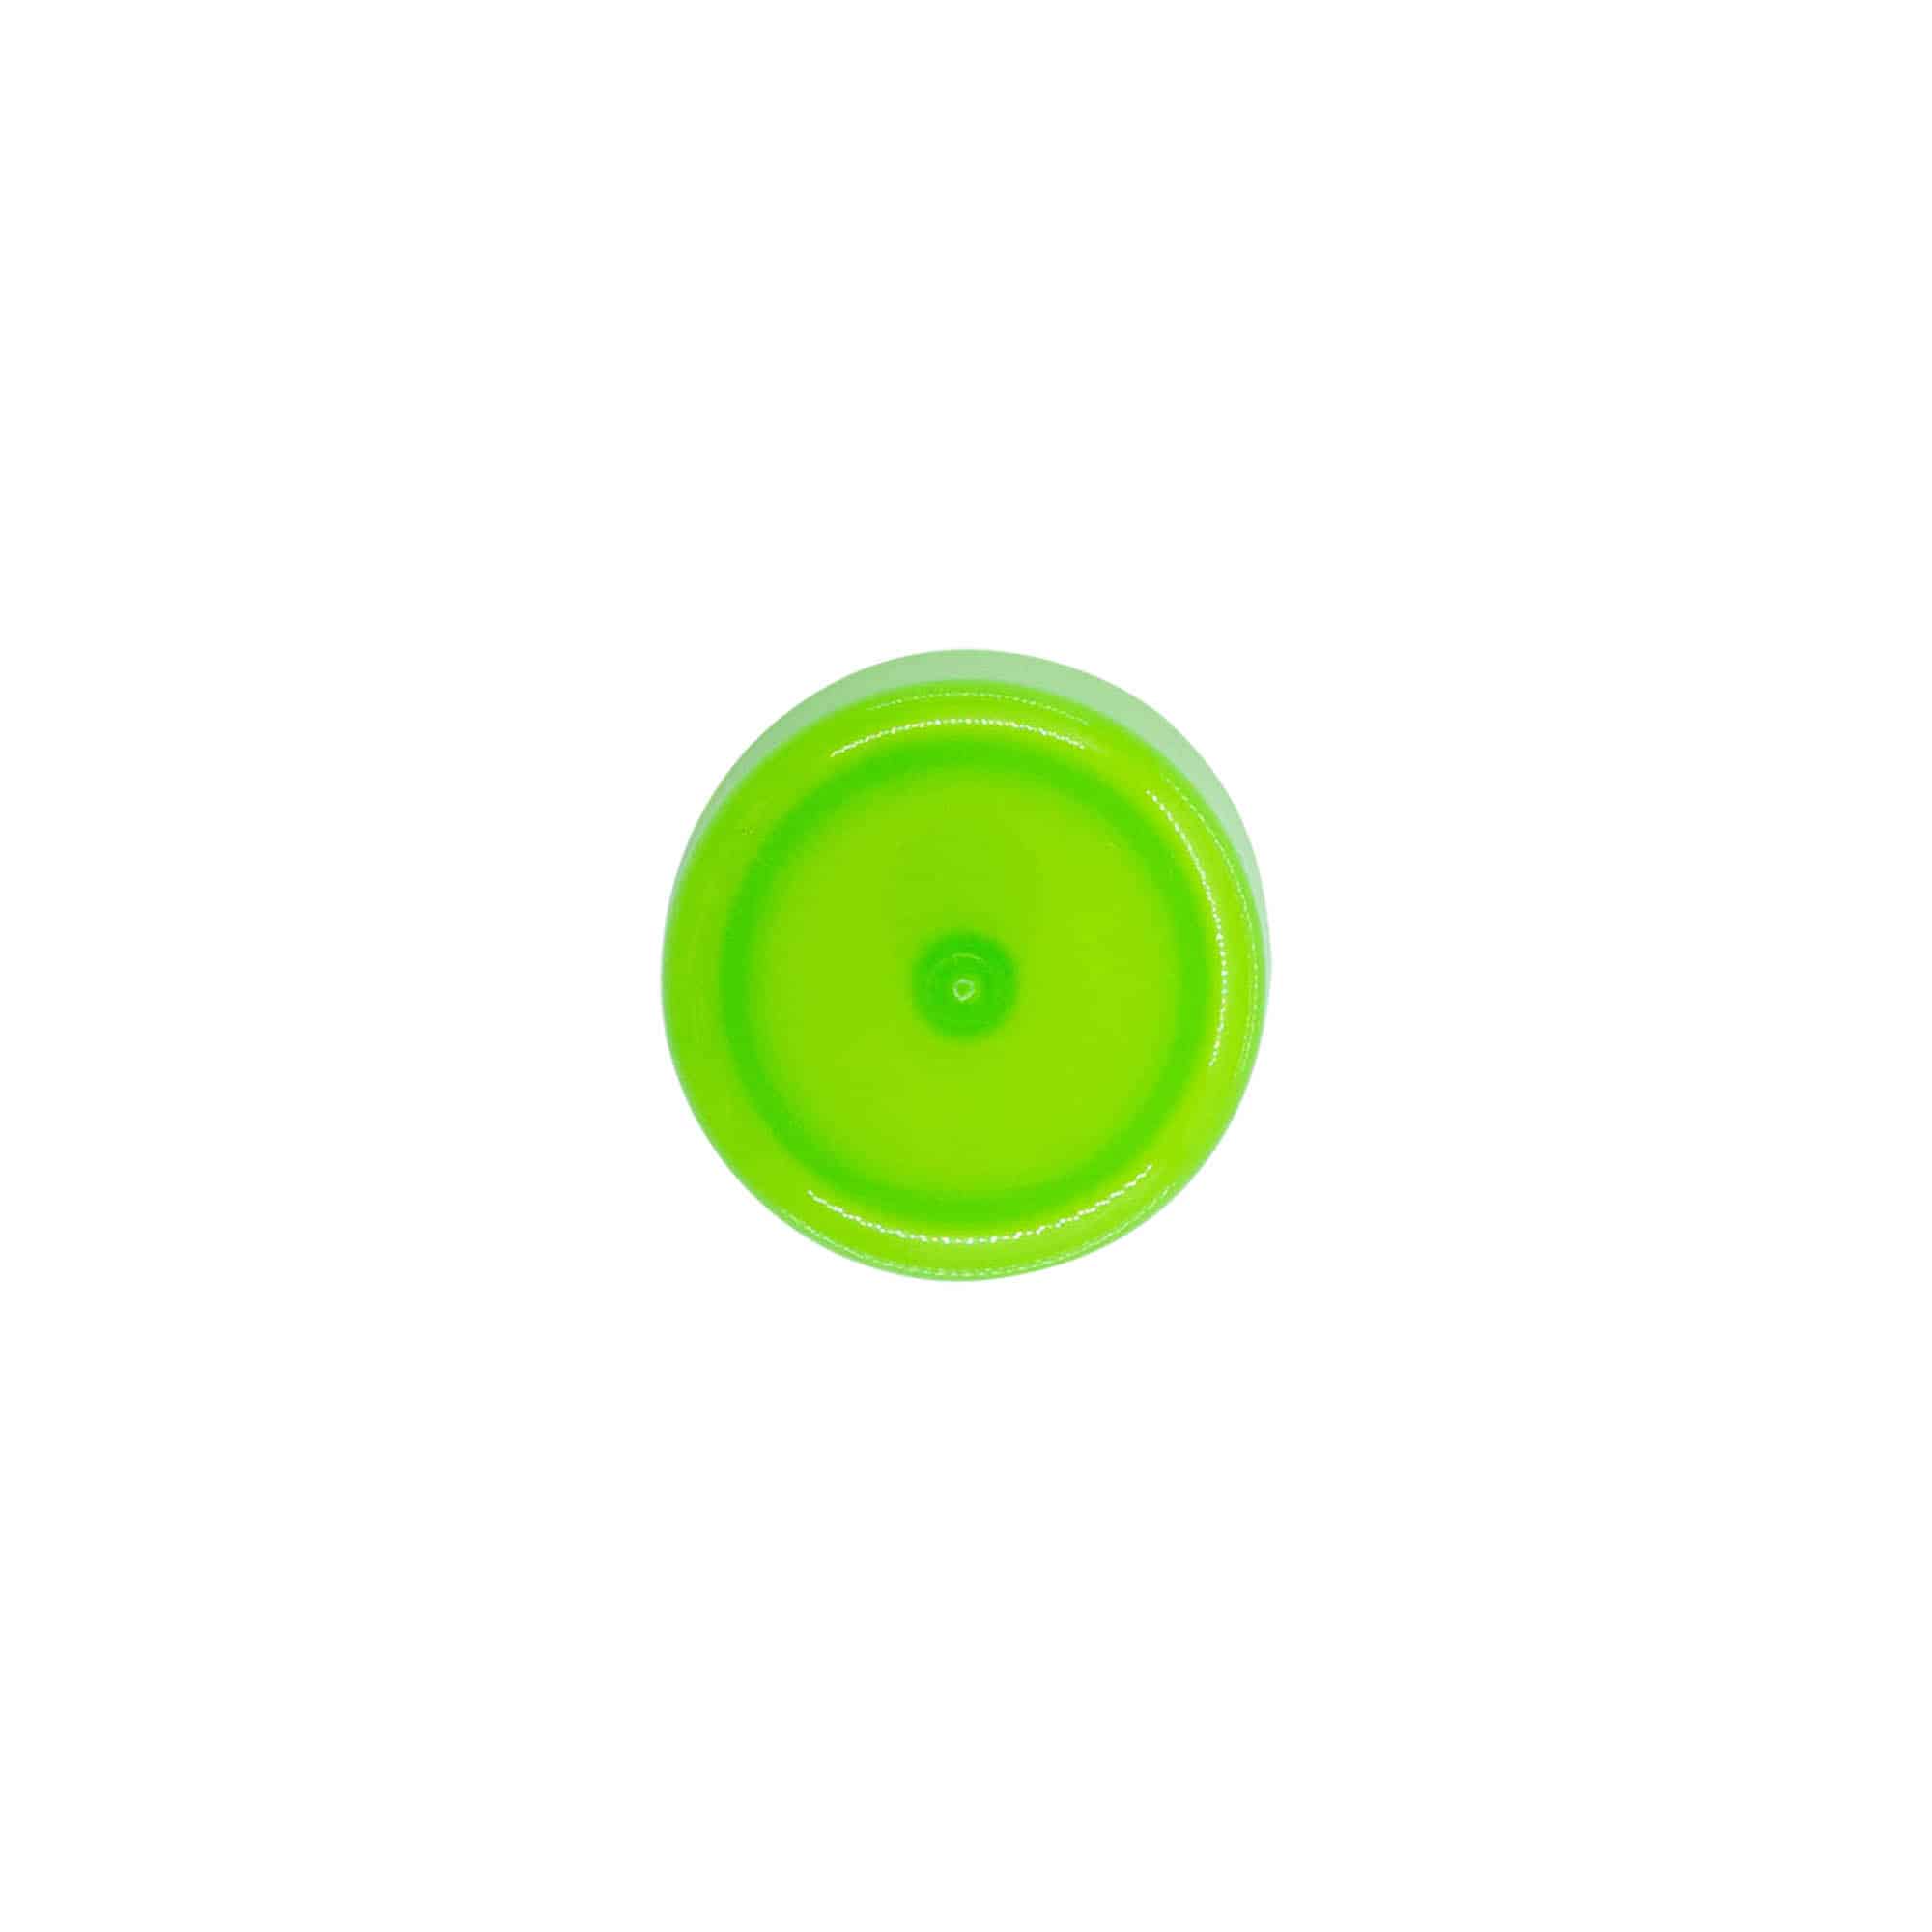 Zakrętka z wkładką natryskową, tworzywo sztuczne PP, kolor zielony, do zamknięcia: GPI 24/410